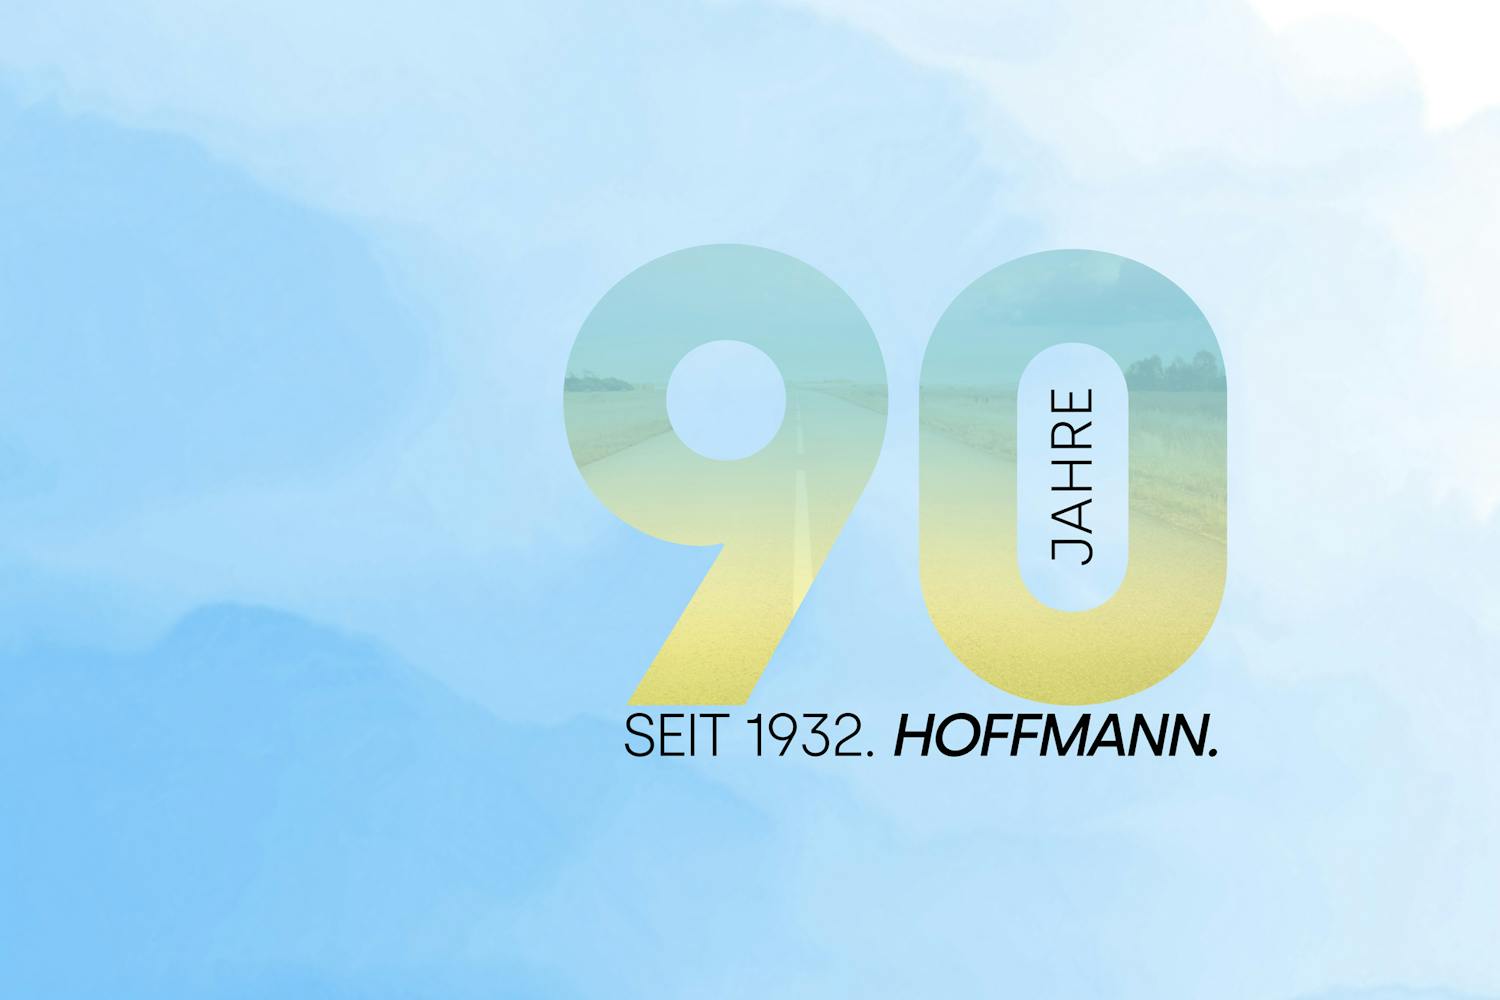 Autohaus Hoffmann feiert Geburtstag. Wir blicken zurück auf 90 Jahre Geschichte und freuen uns geimeinsam mit Ihnen auf Aktionen und Events im Jahr 2022.